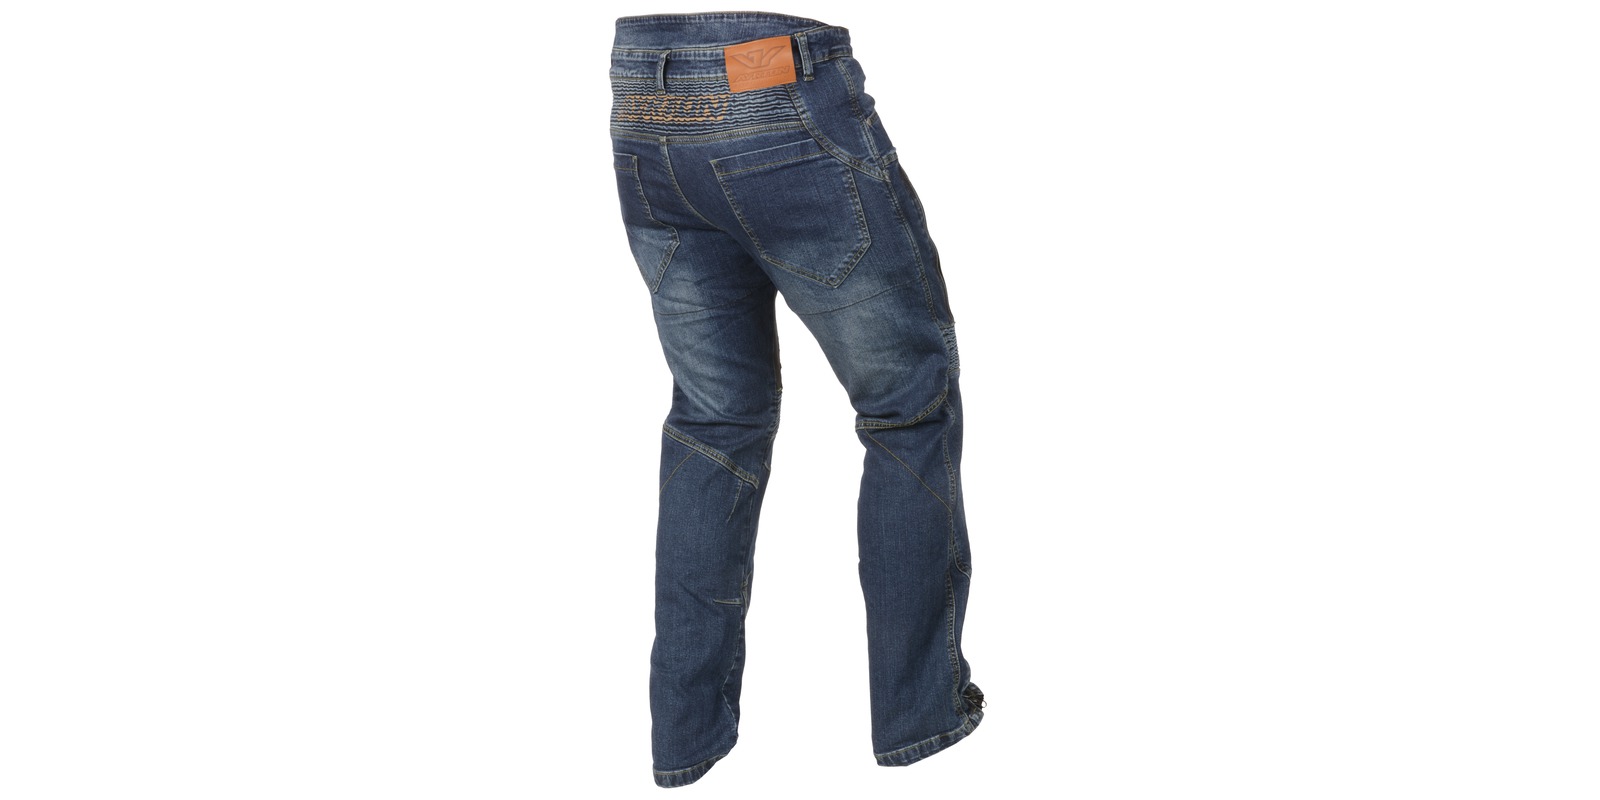 Obrázek produktu kalhoty, jeansy 505, AYRTON (modré) nemá